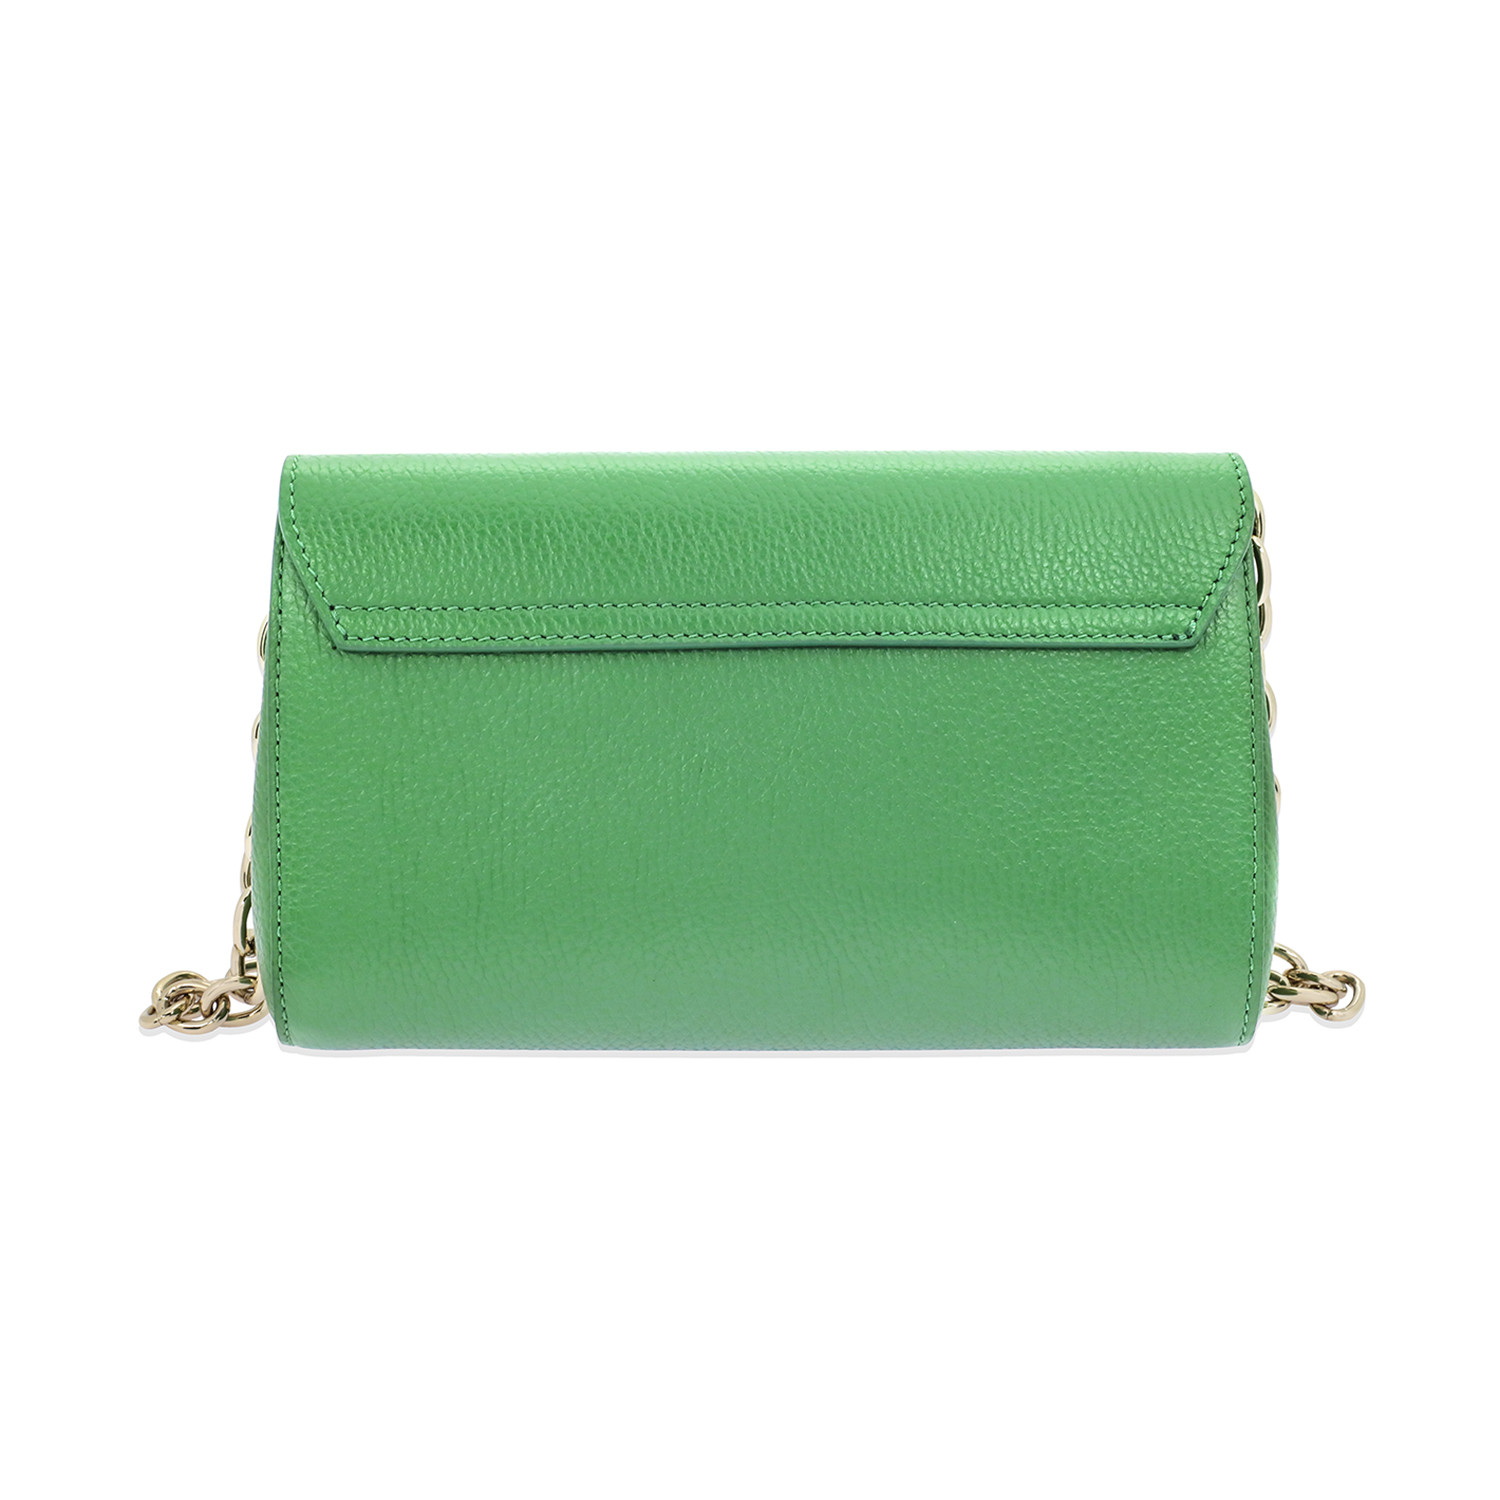 Versace Collection // Women's Shoulder Bag // Green - Men's & Women's ...